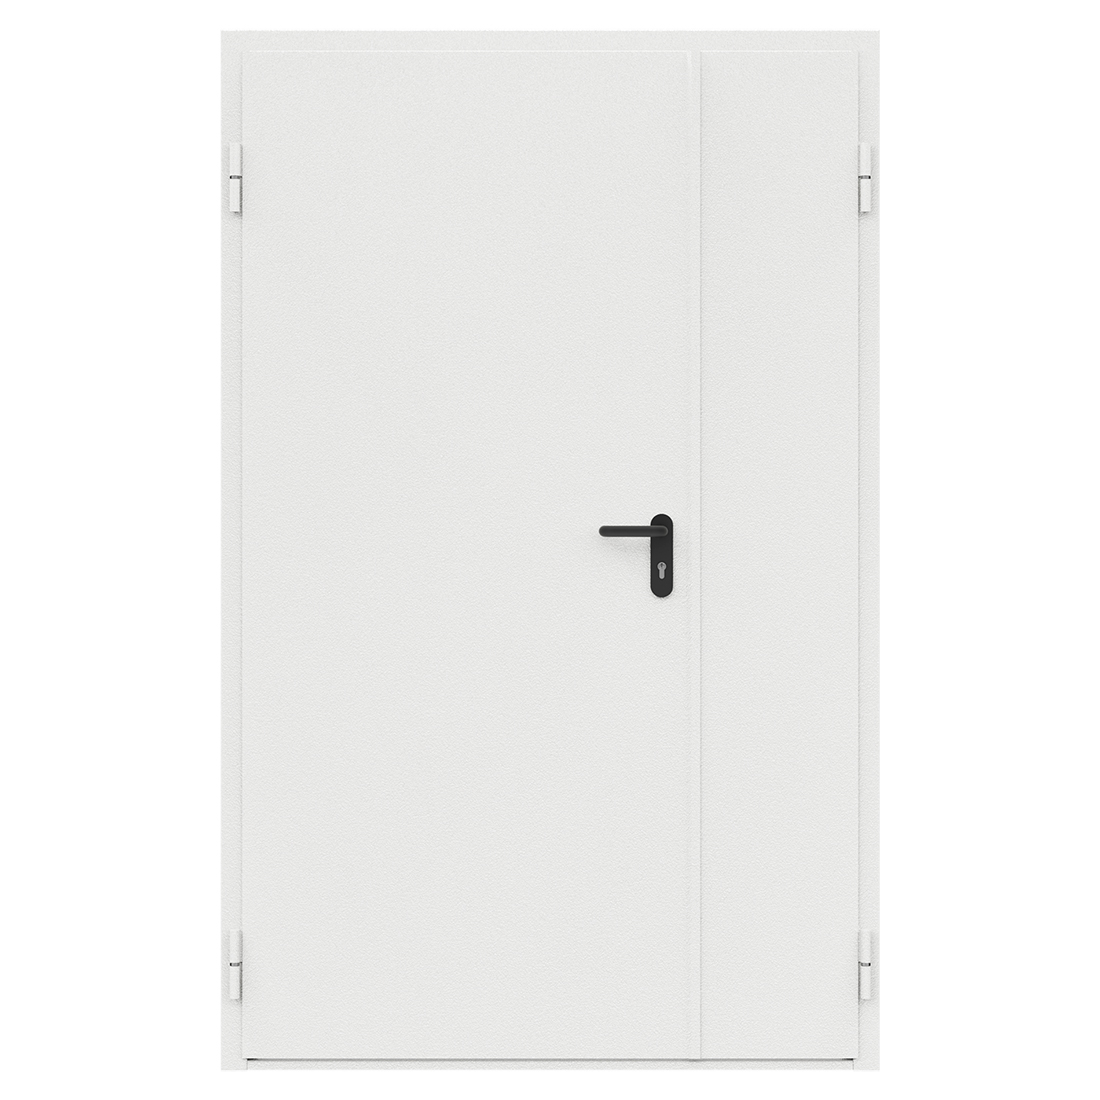 Дверь противопожарная металлическая сплошная двупольная неравнопольная угловая коробка (1250х2075мм) ДПМ-Пульс-02/60 (EI 60), левая, RAL9016